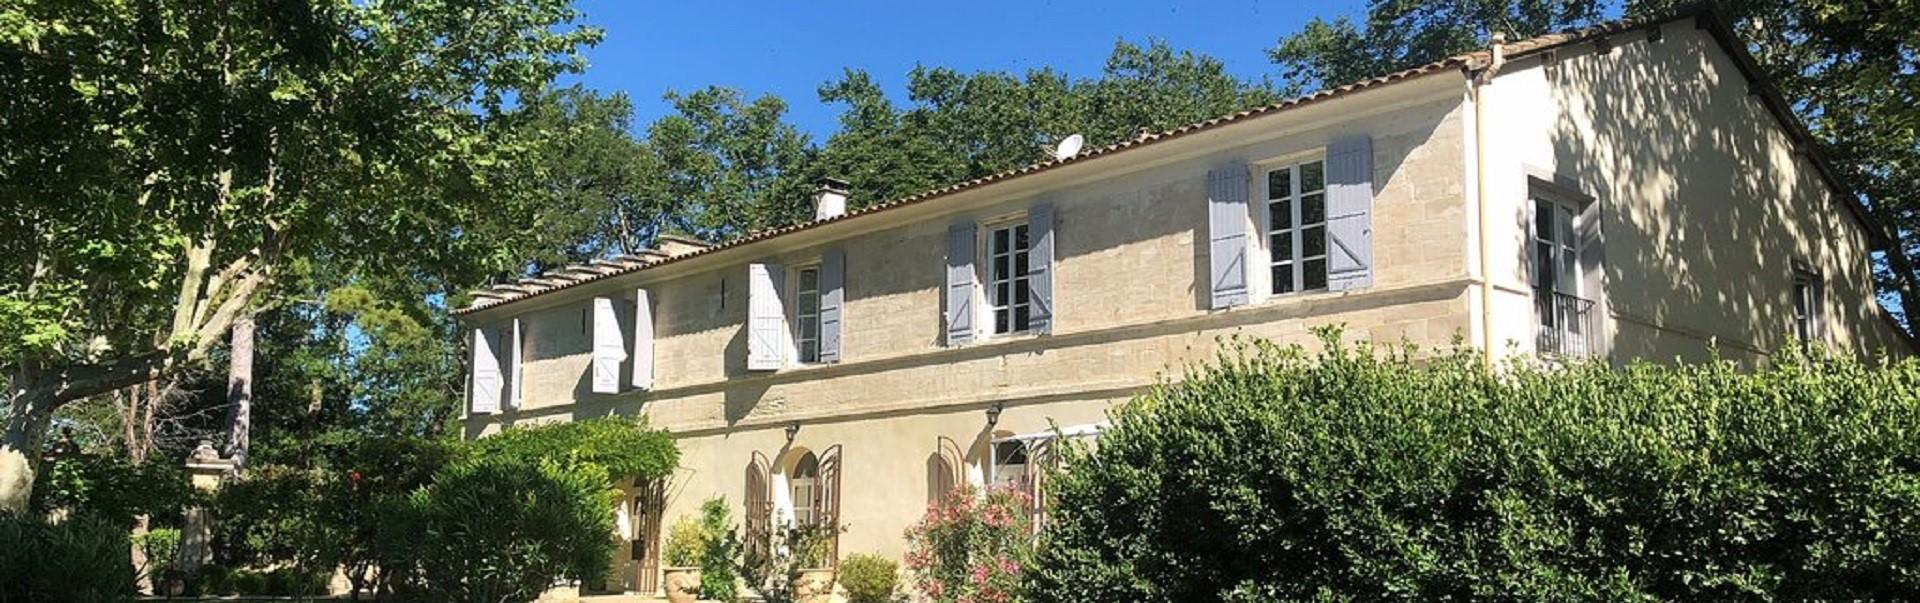 mas-de-capelou-avignon-vaucluse-provence-demeure-jardins-seminaires-de-caractere